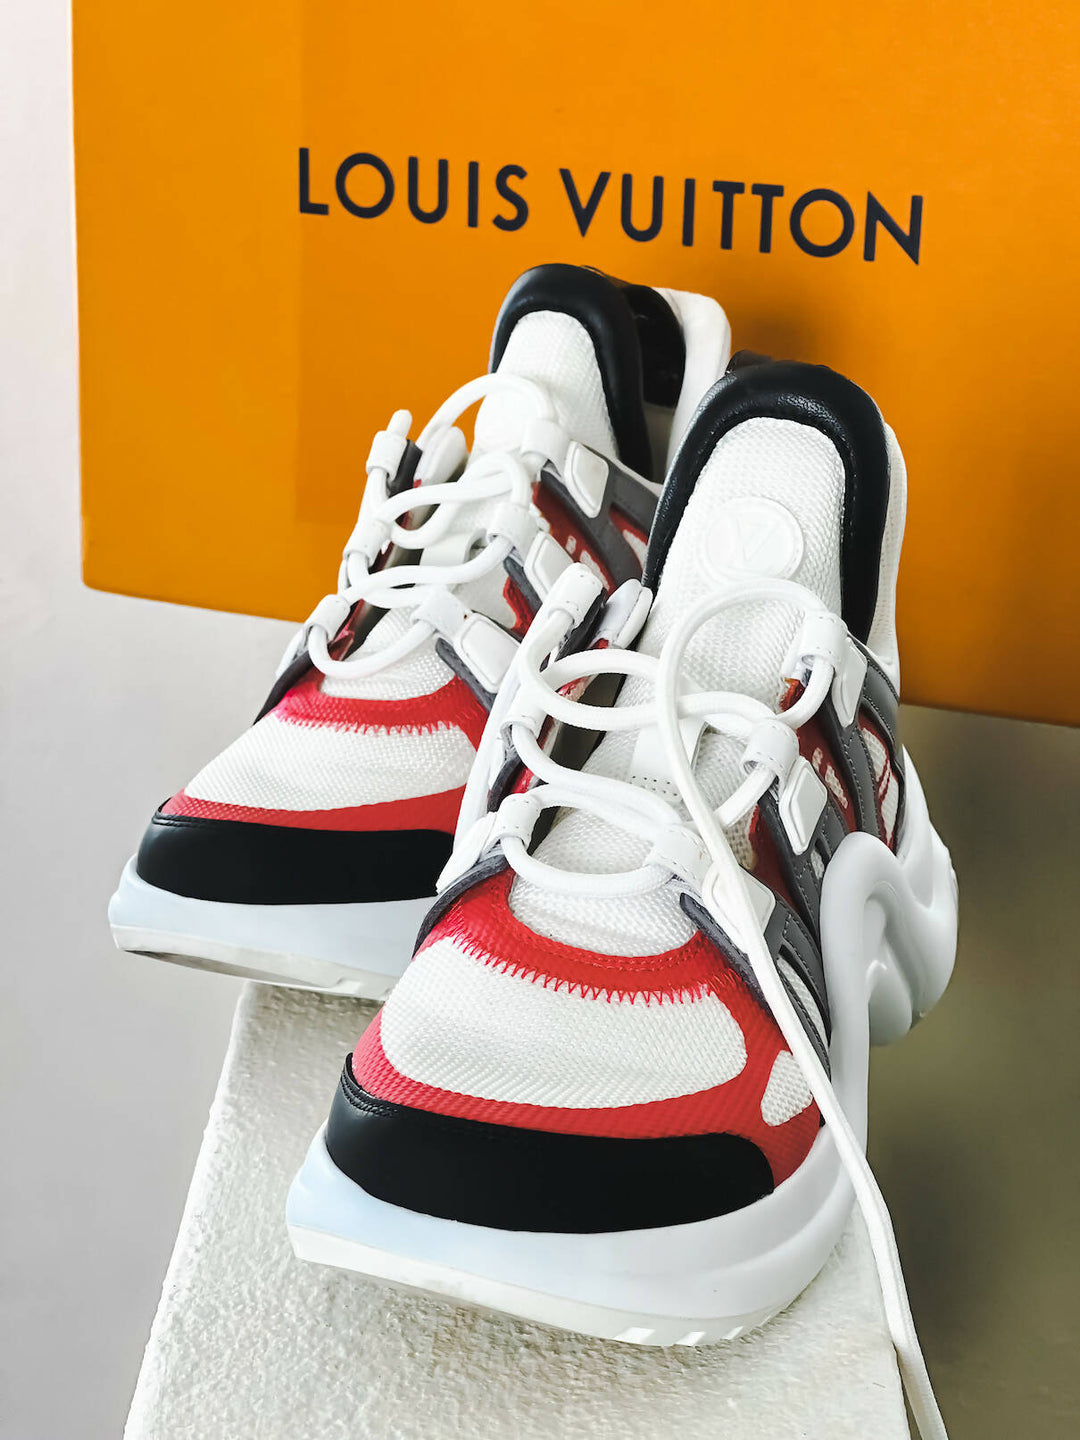 Louis Vuitton Archlight Trainer Black White (Women's) - 1A43K8 - US